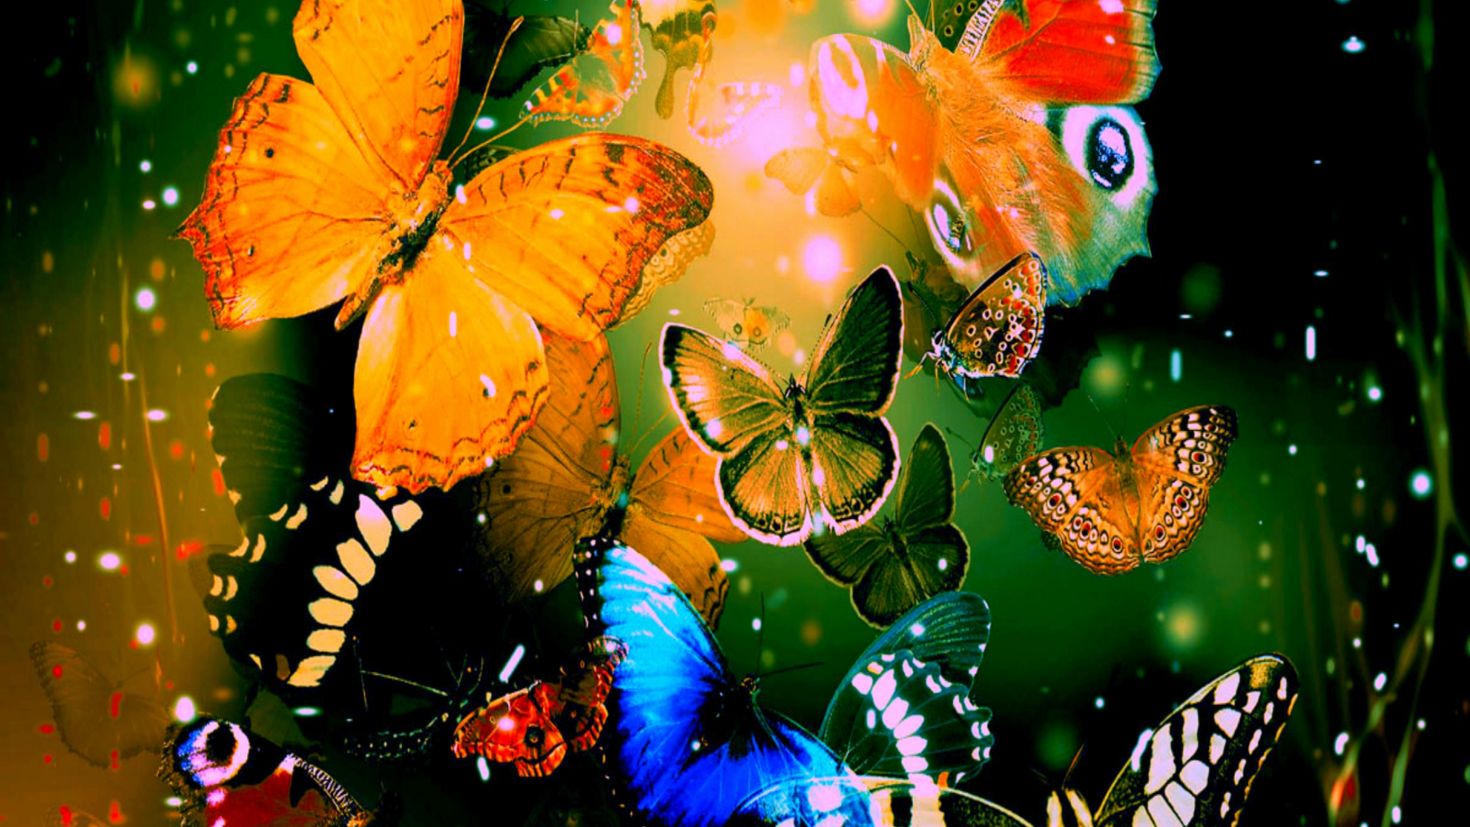 Обои на телефон бабочки живые красивые